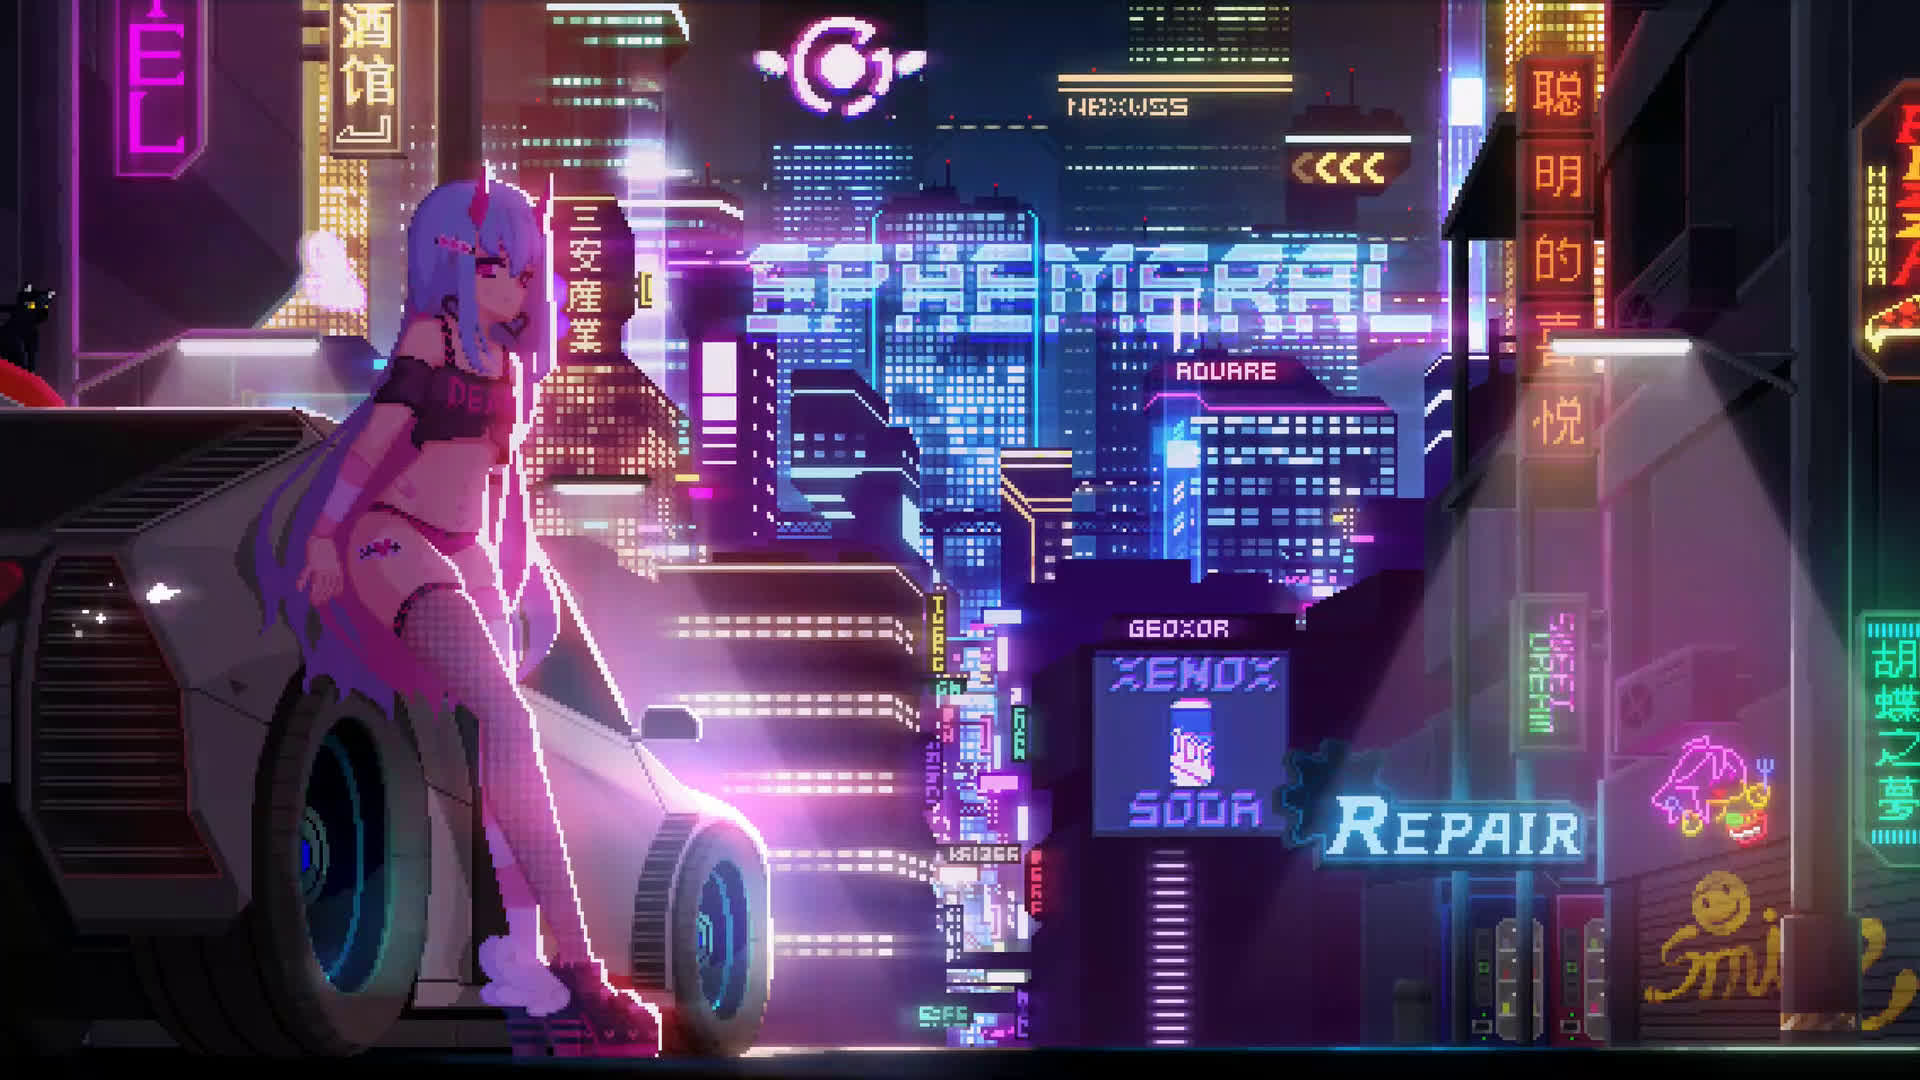 Cyberpunk Neon Live Wallpaper - Live Wallpaper